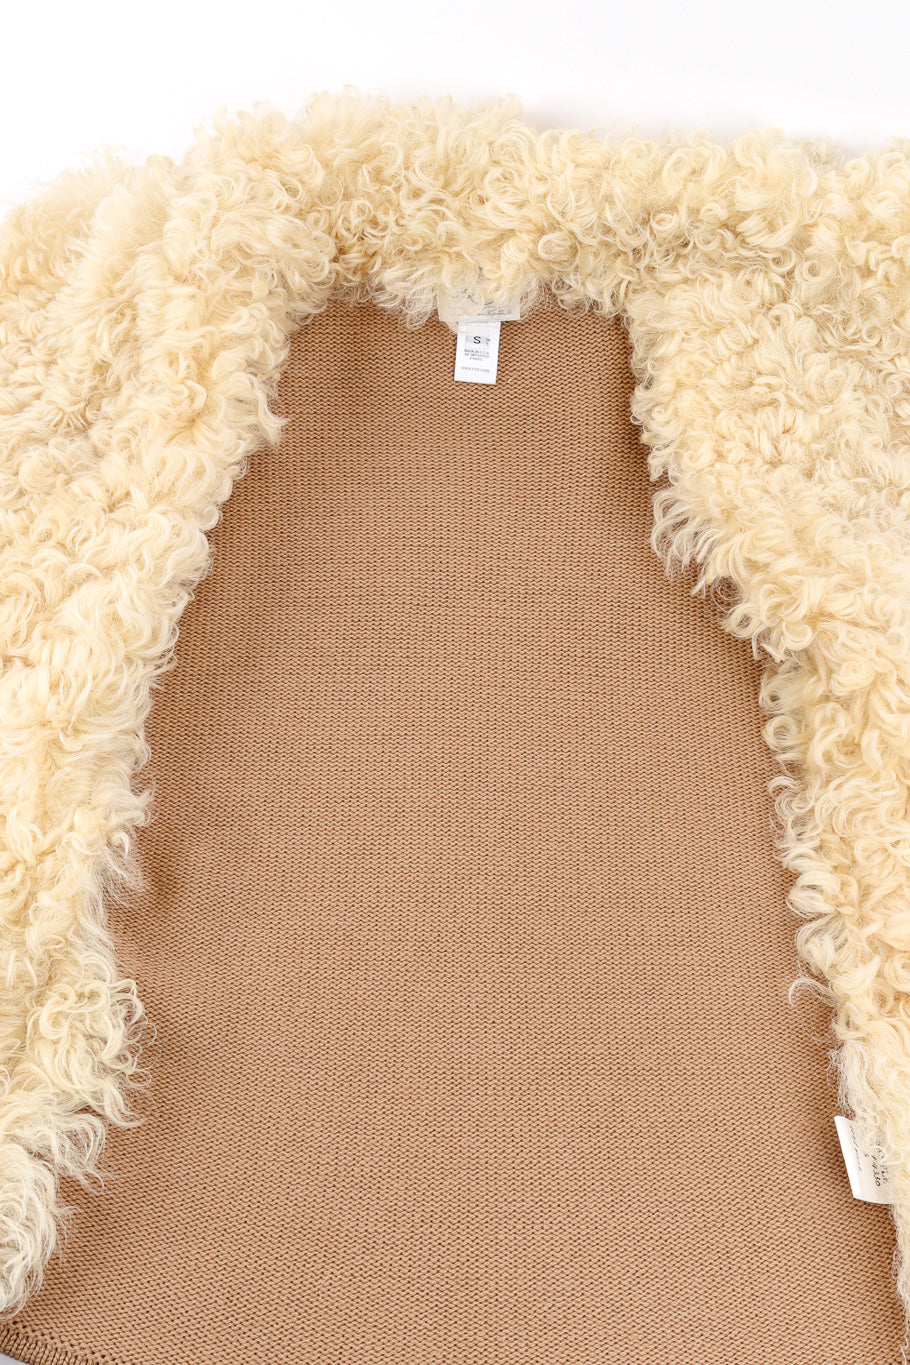 Lambsuede & Wool Knit Jacket by Oscar de la Renta inside knit @recessla